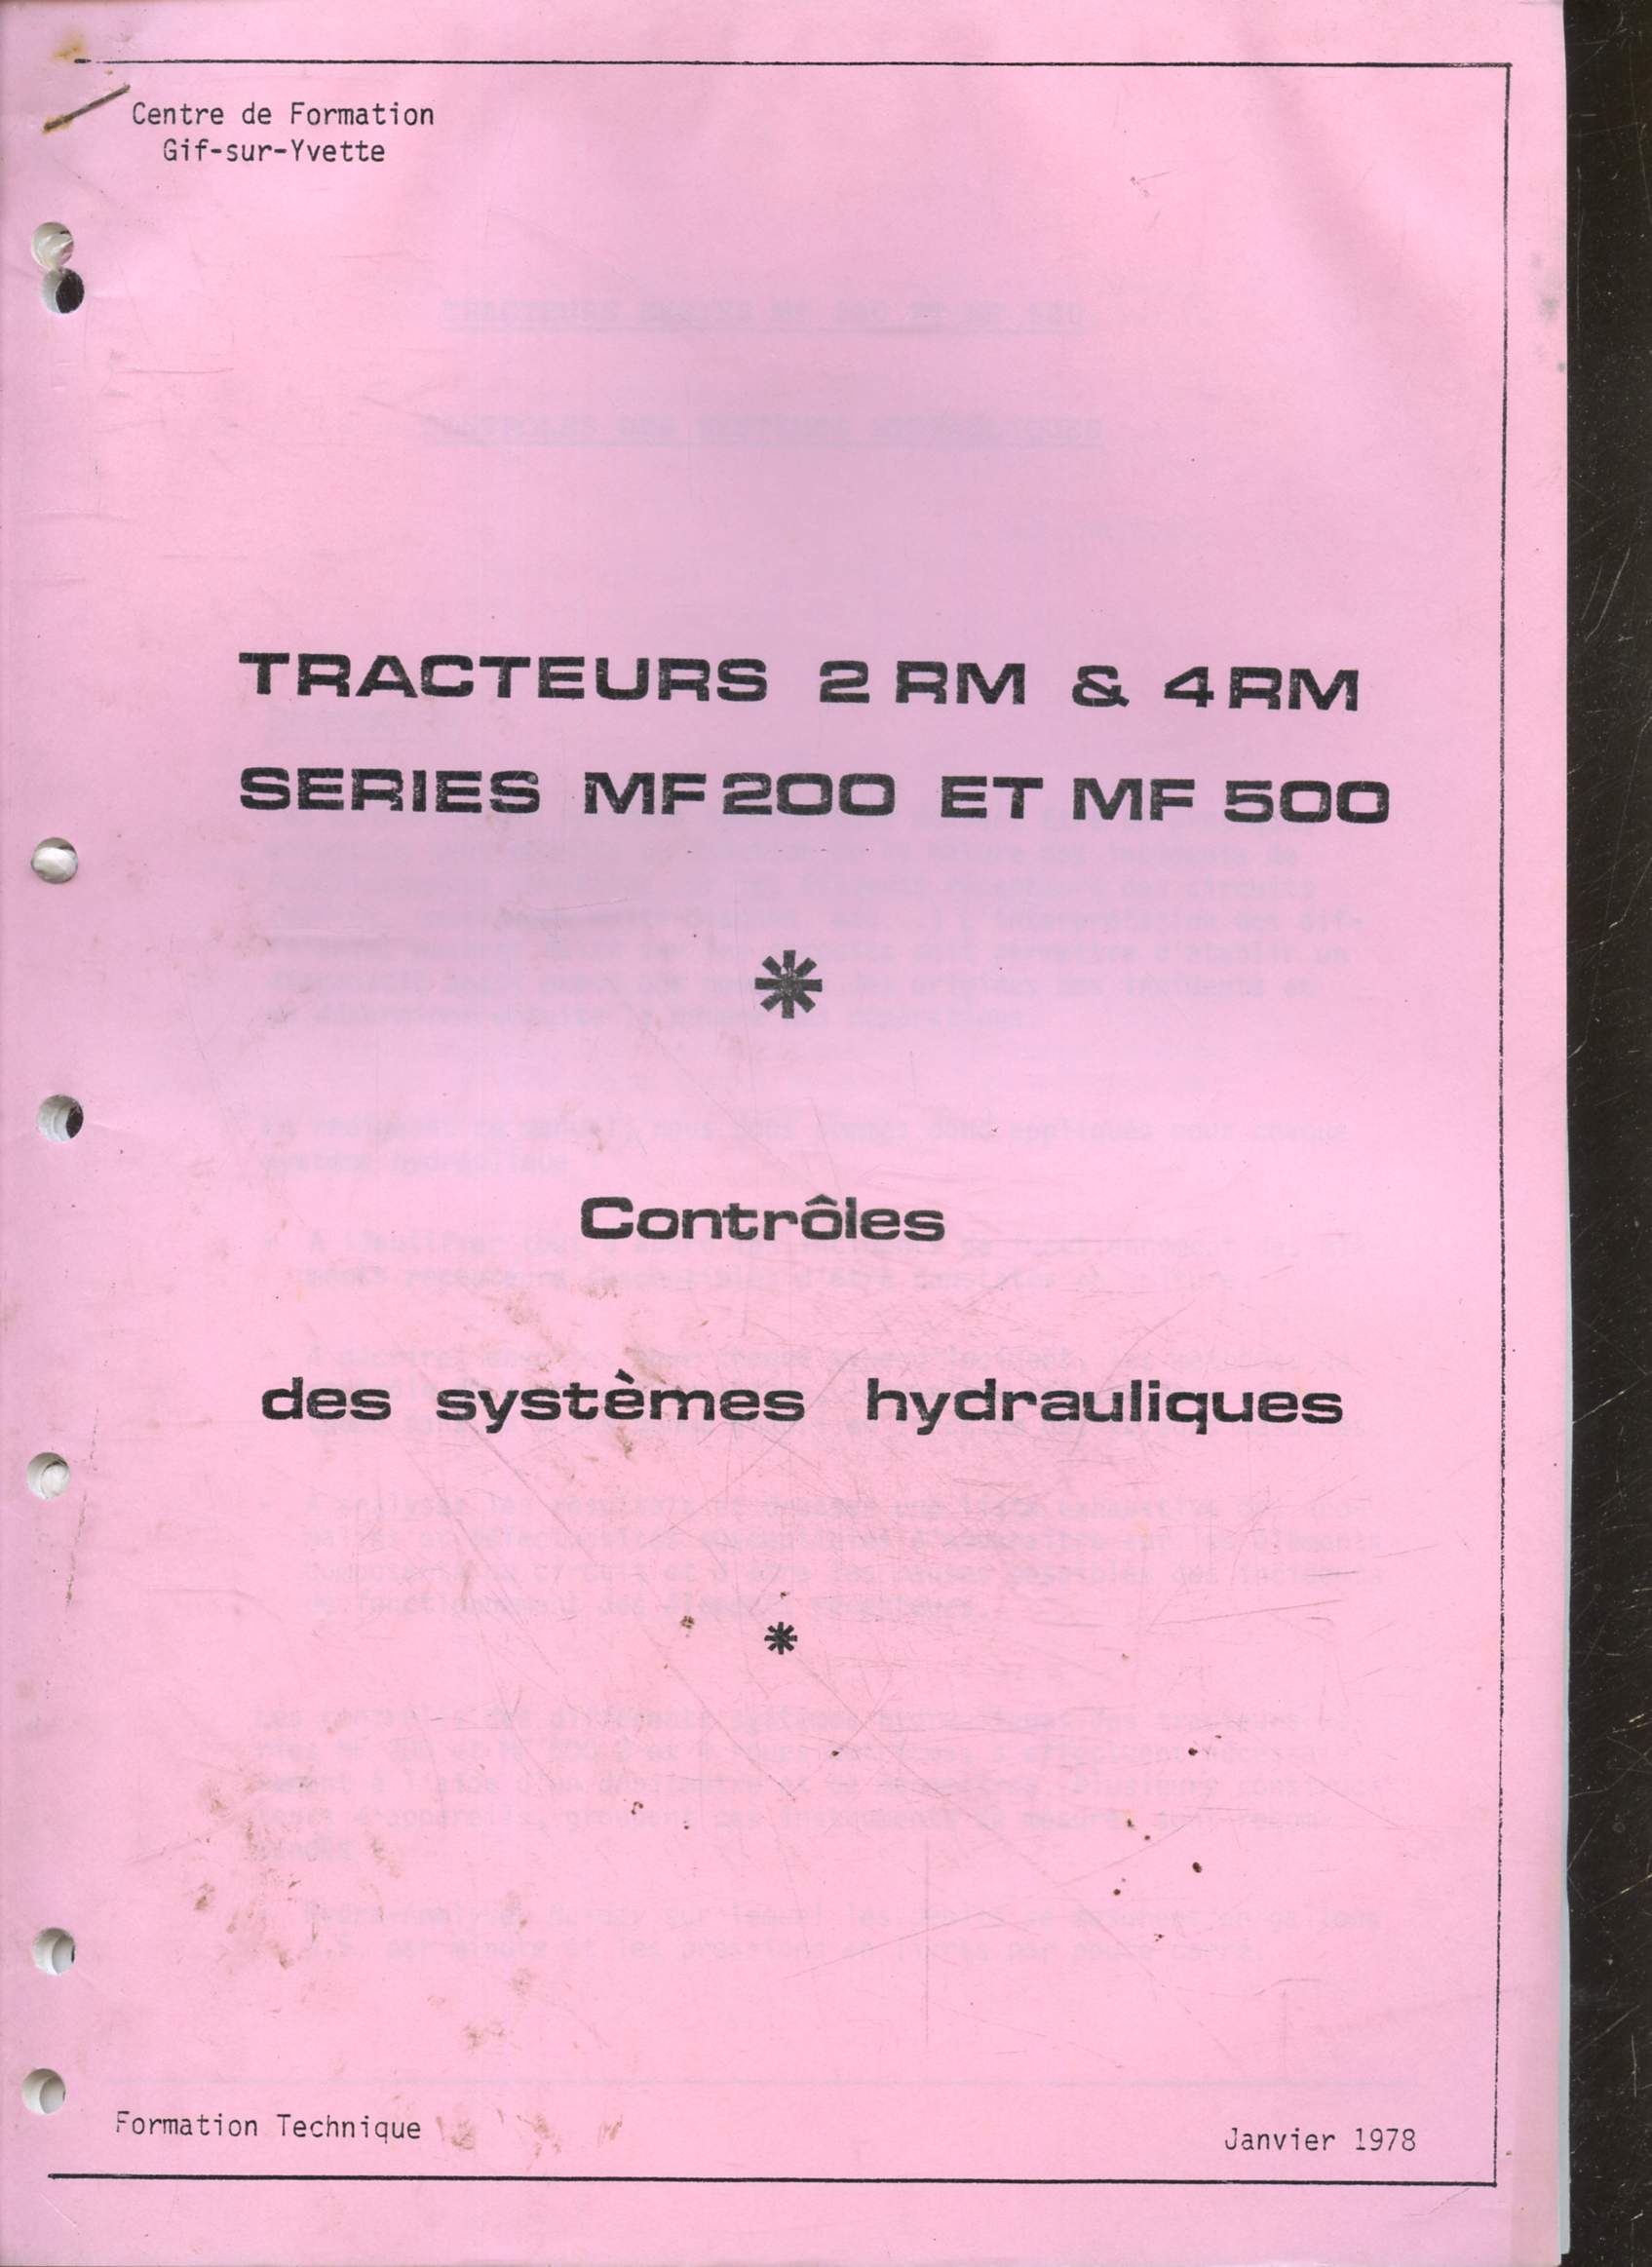 Massey Ferguson - formation technique- centre de formation gif sur yvette - tracteurs 2 RM & 4 RM series MF200 et MF 500 - controles des systemes hydrauliques - janvier 1978